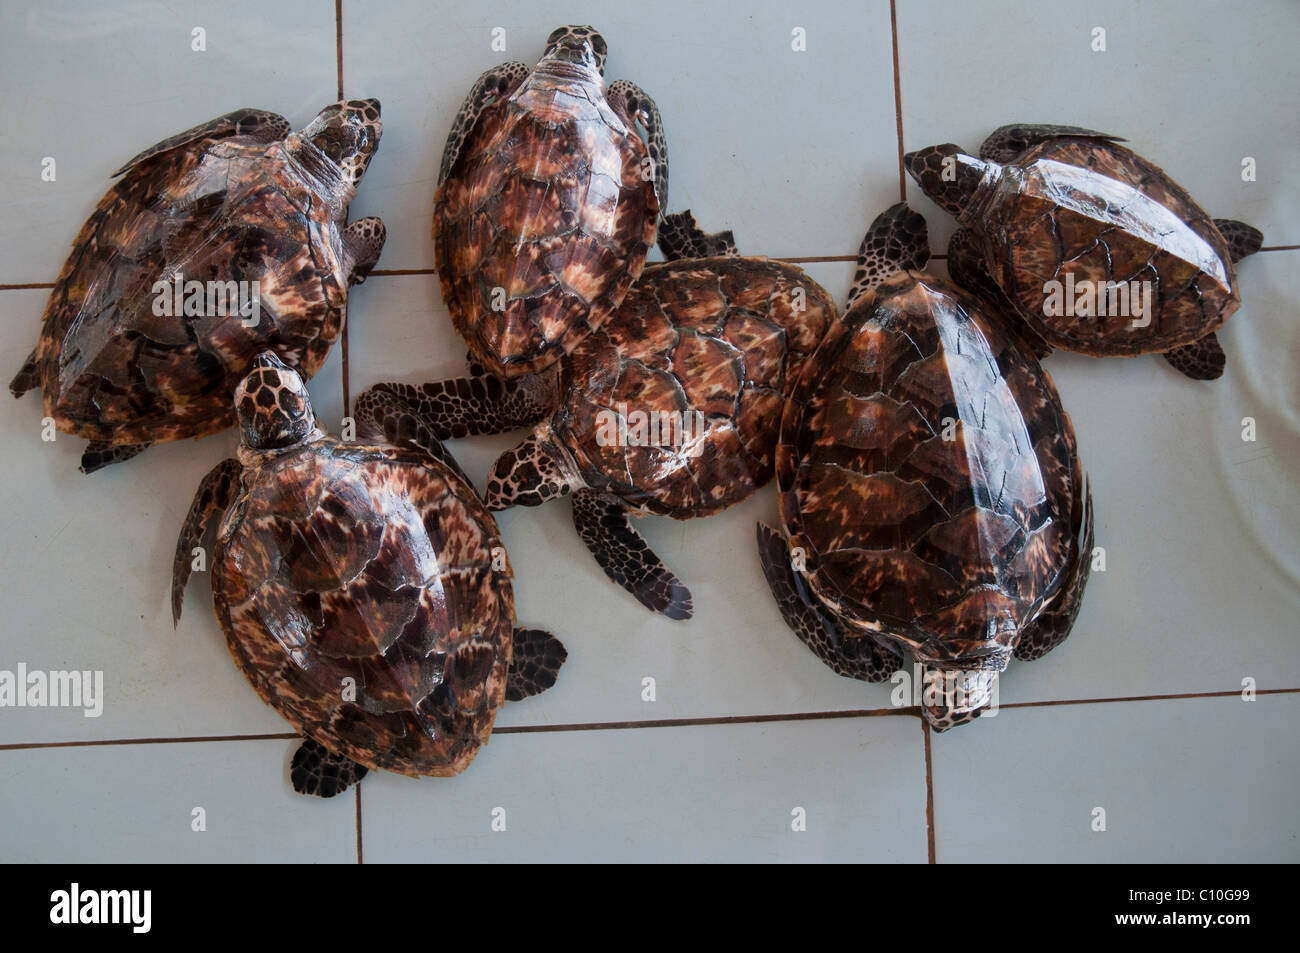 Baby loggerhead turtles in a turtle sanctuary on Gili Trawangan in Indonesia Stock Photo